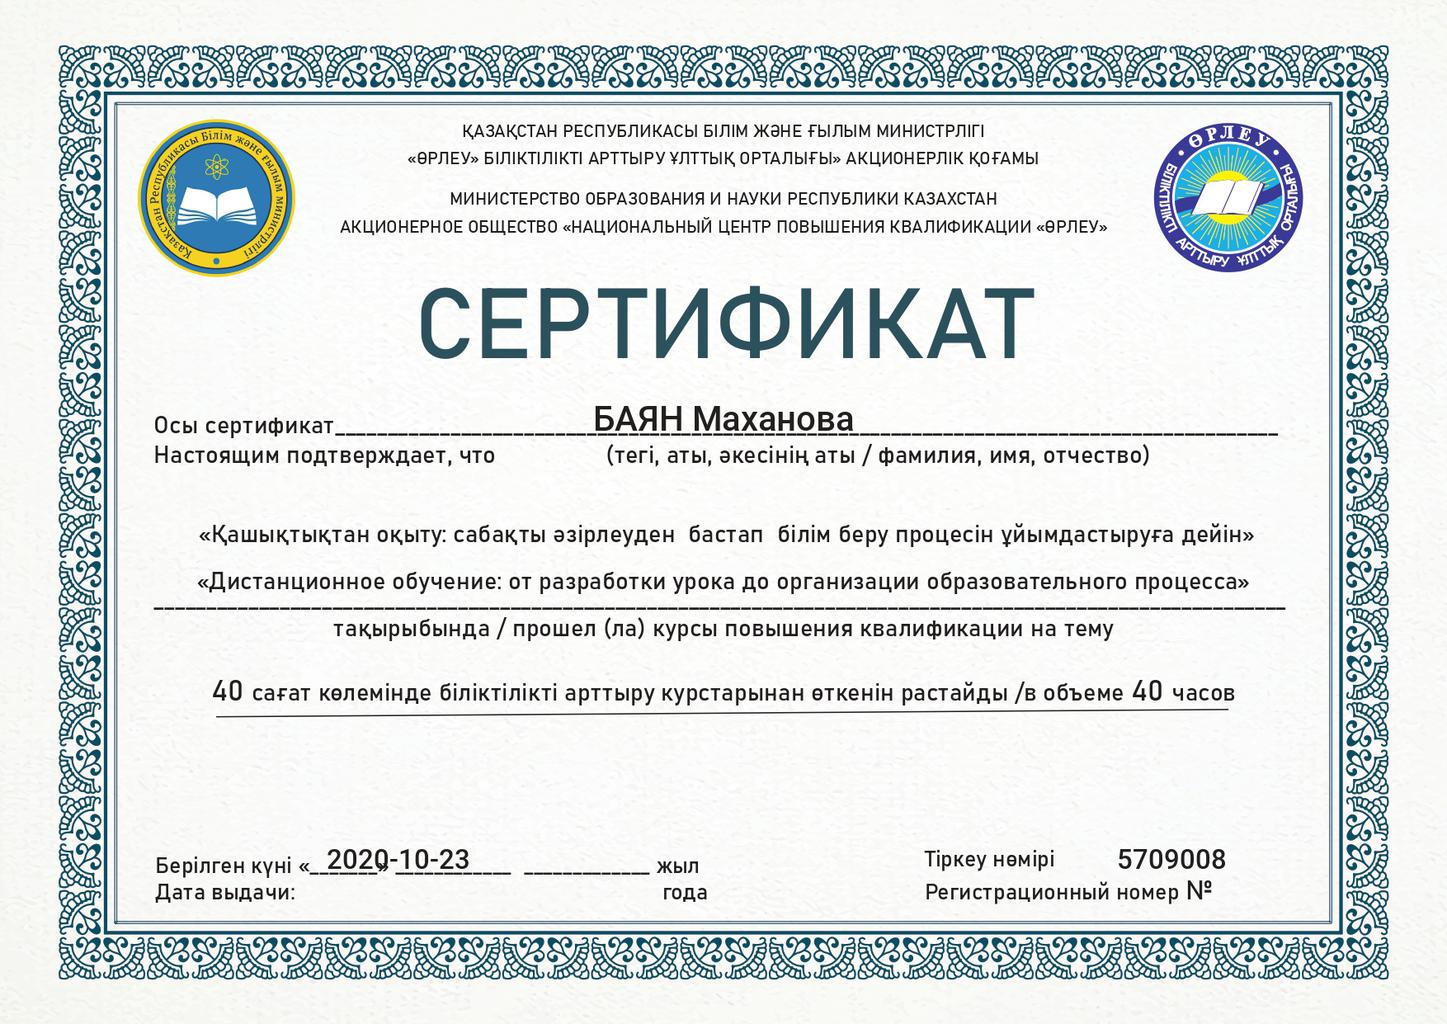 Сертификат. Сертификат Казахстан. Казахский сертификат. Сертификат на казахском языке.